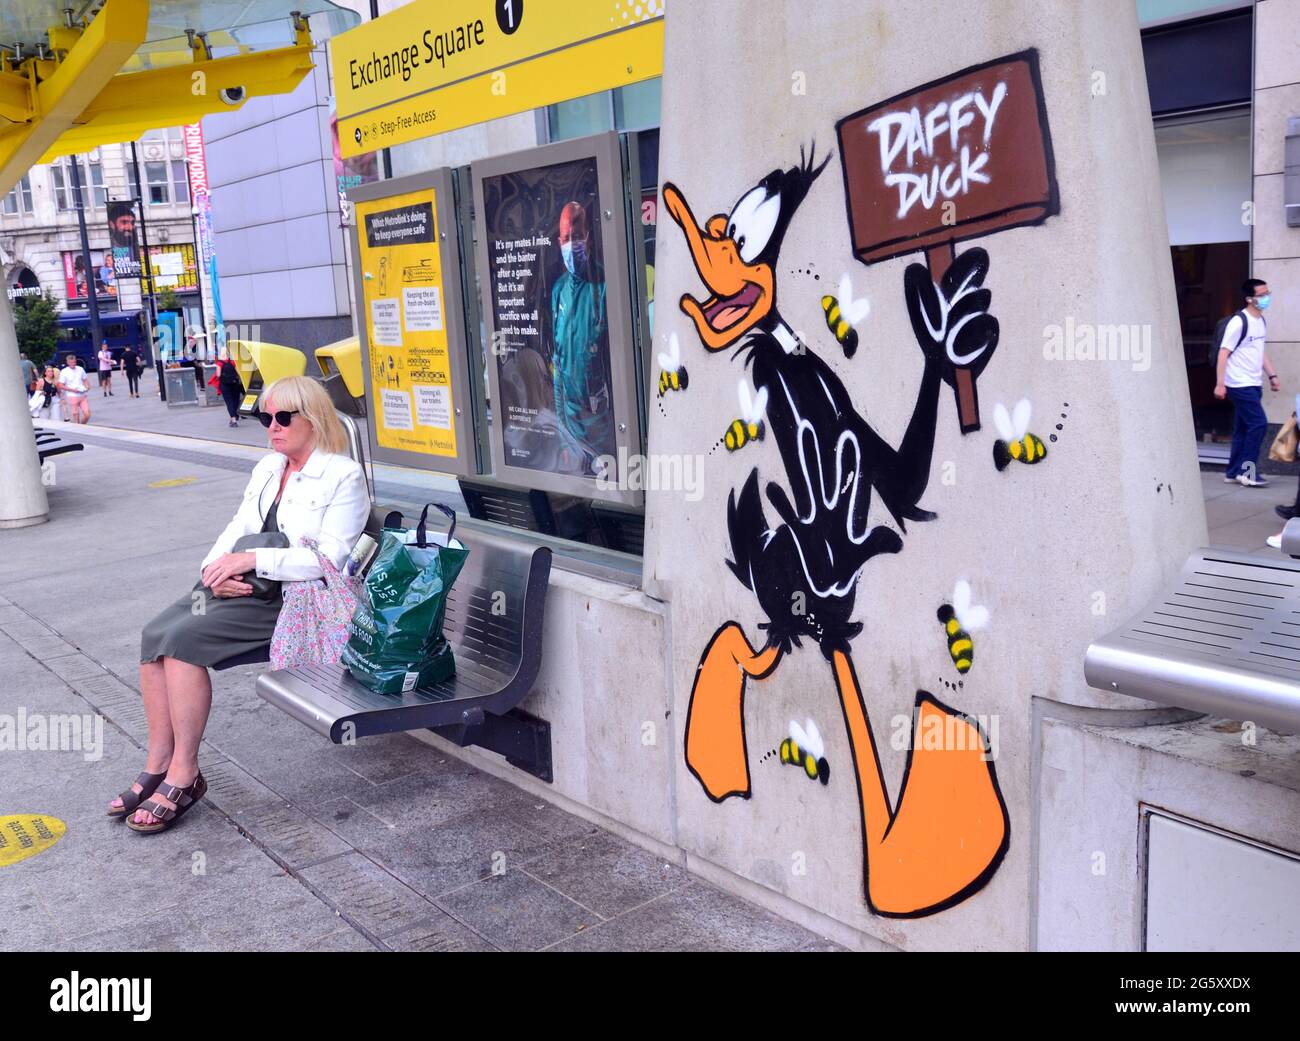 Eine Frau sitzt neben einem Bild der Zeichentrickfigur Daffy Duck, Teil eines Looney Tunes-Kunstpfades, der in Manchester, England, eröffnet wurde. Stockfoto